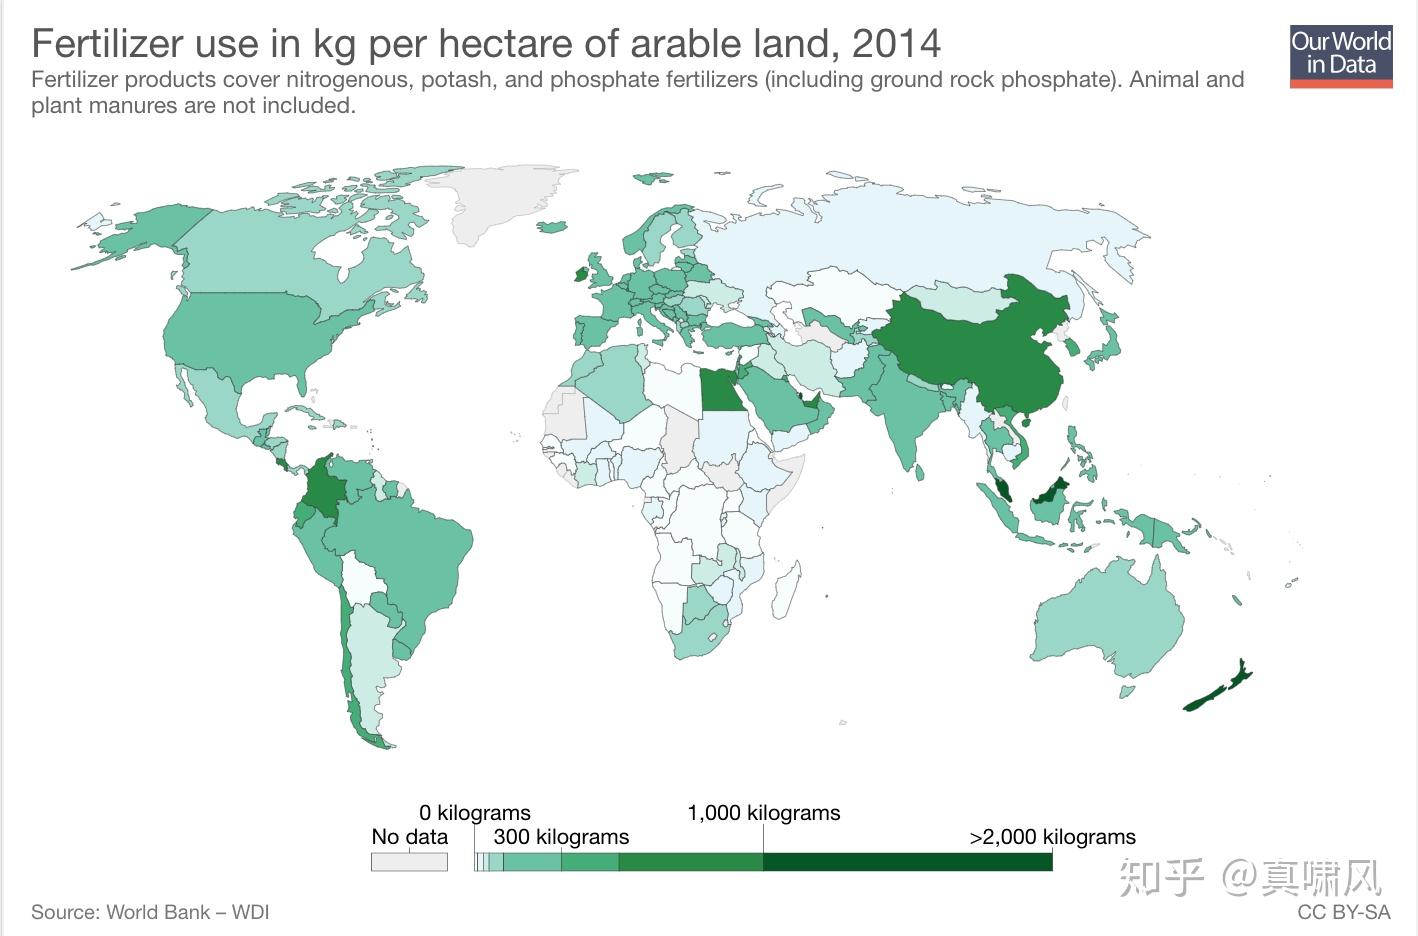 四张图对比各国的化肥与农药使用量